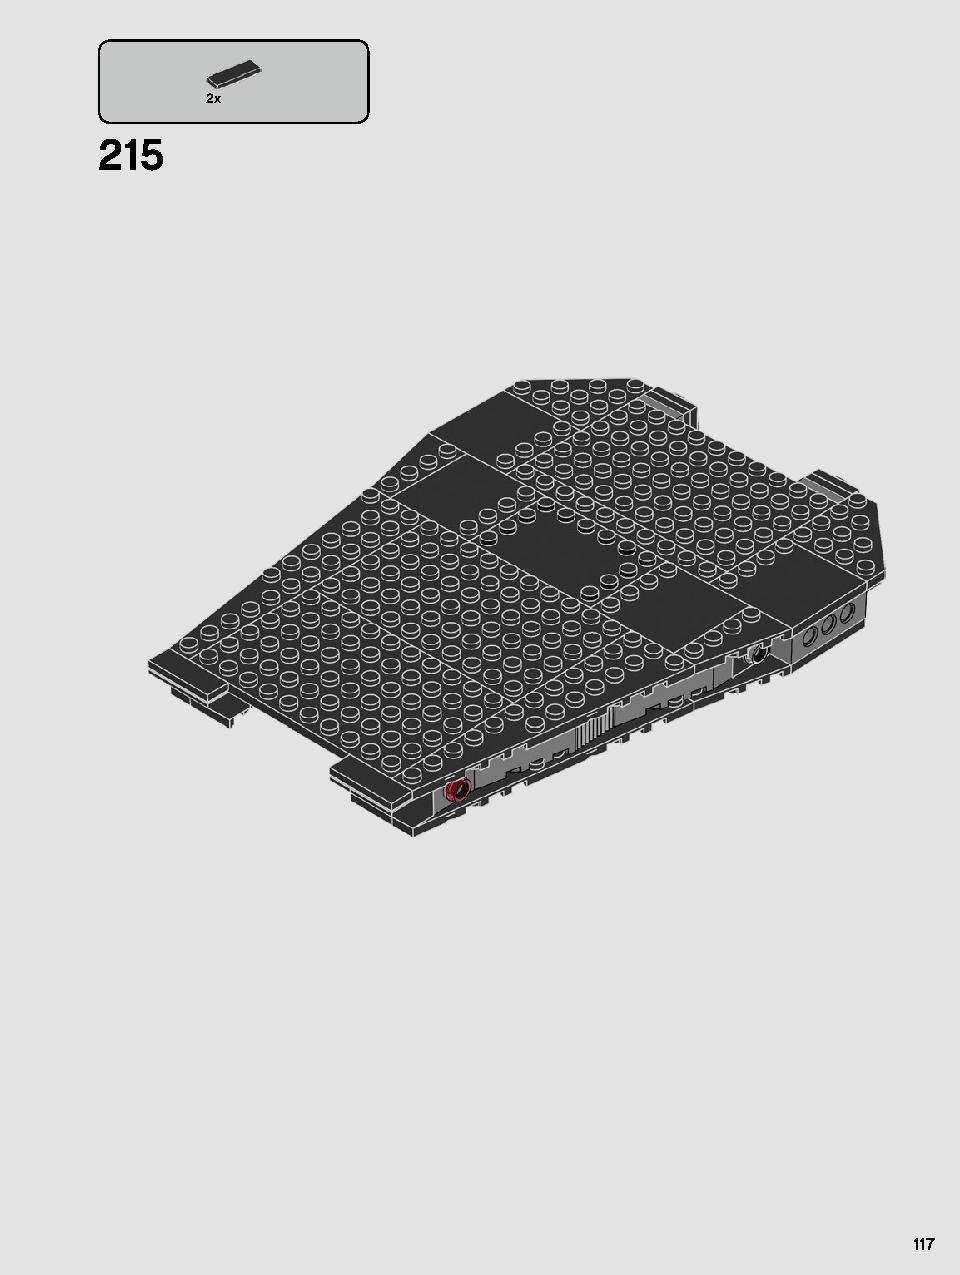 스타워즈 카일로 렌의 셔틀™ 75256 레고 세트 제품정보 레고 조립설명서 117 page